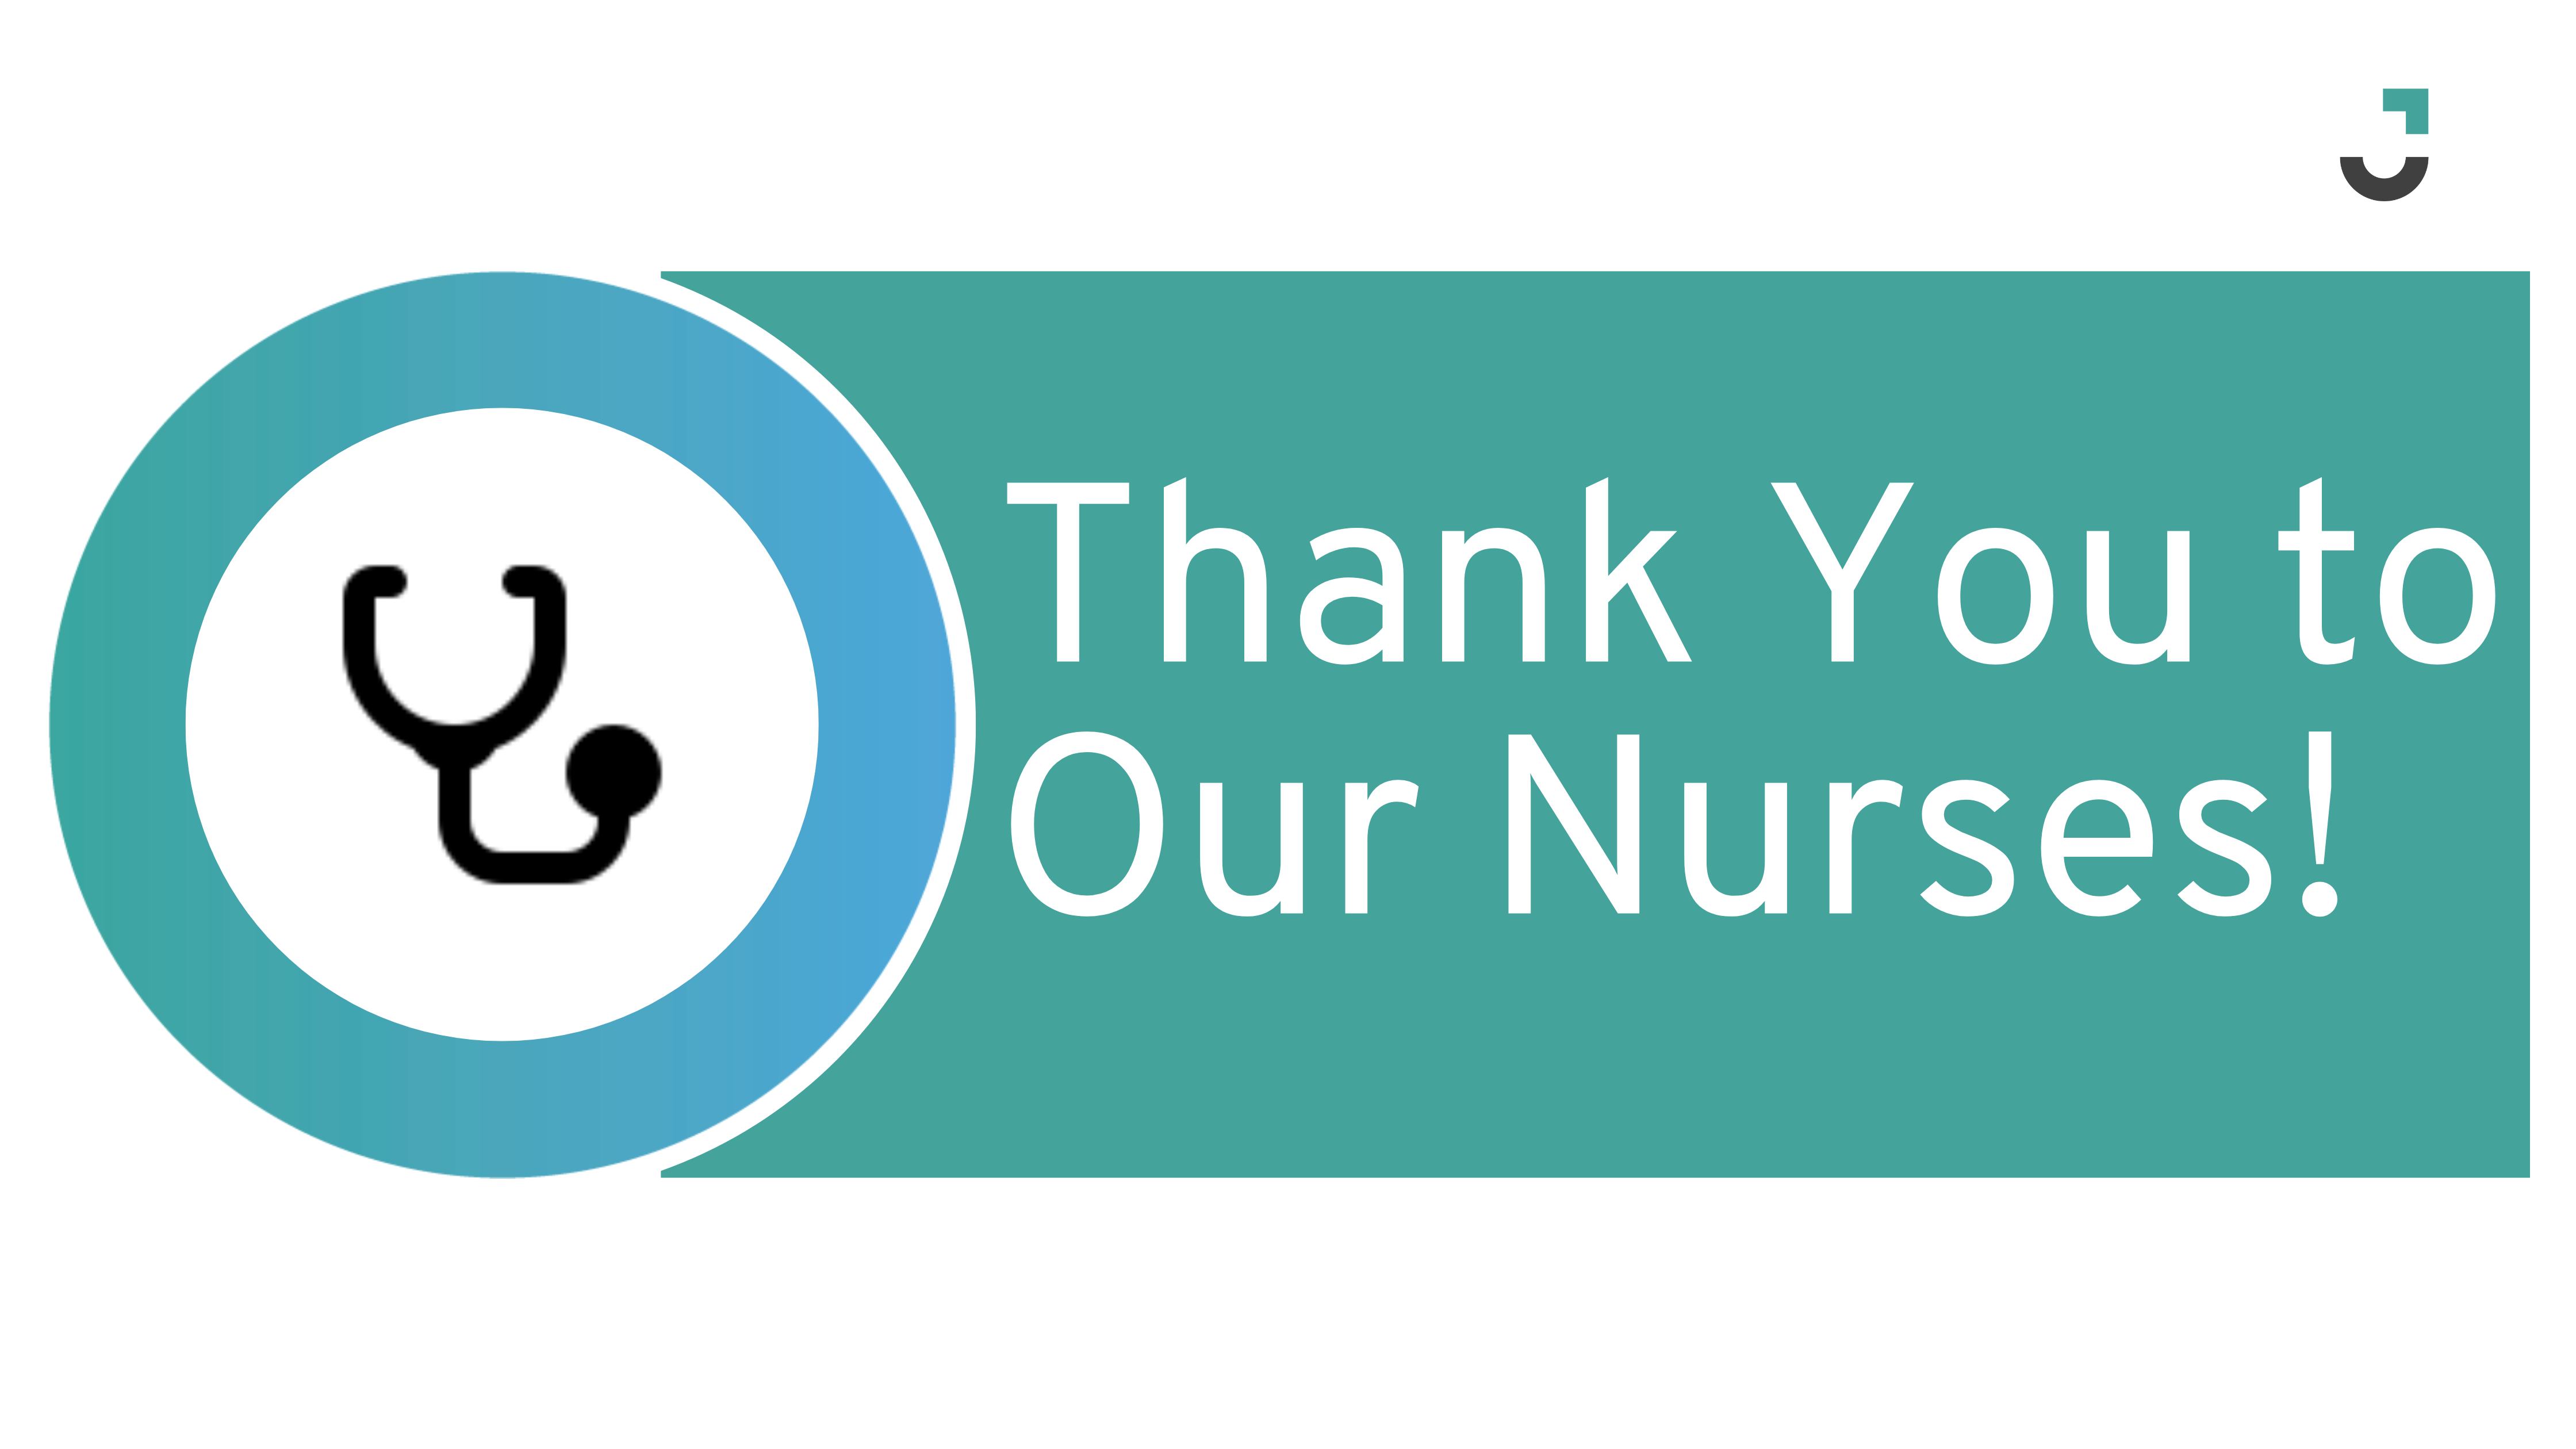 Thank You To Our Nurses!